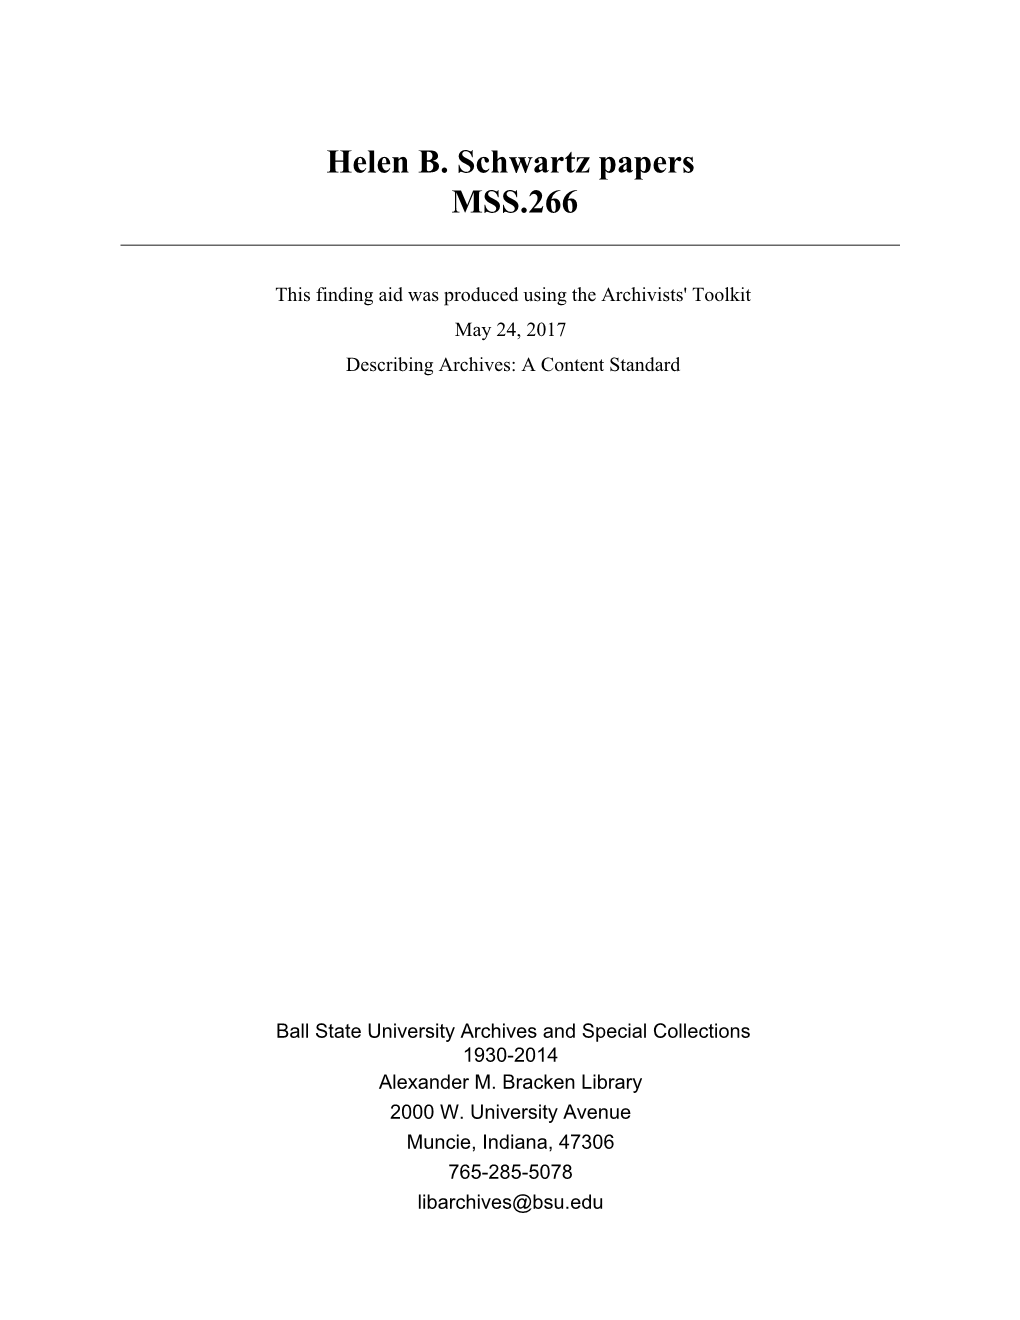 Helen B. Schwartz Papers MSS.266